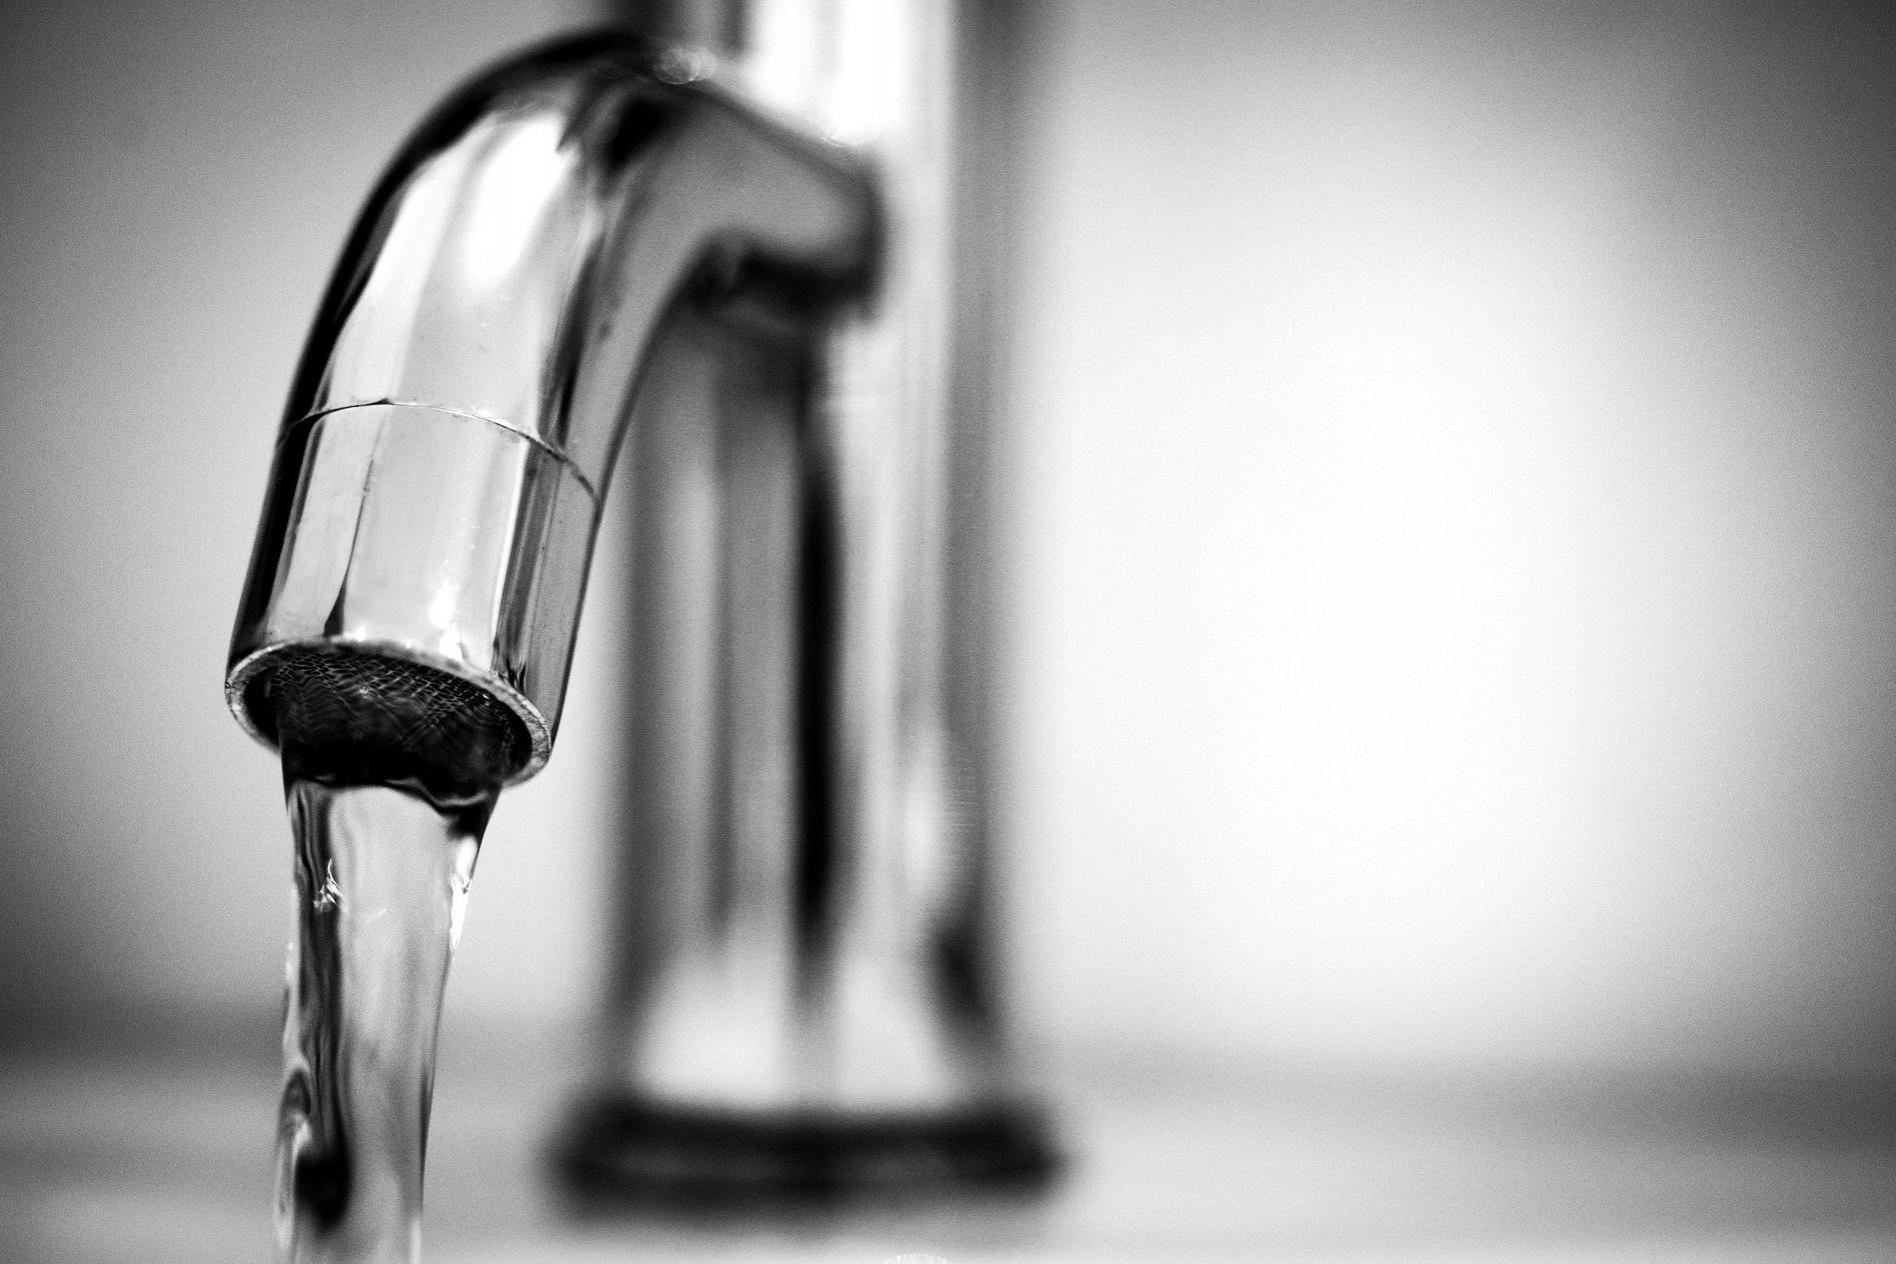 Bild Wasserhahn, Quelle: Bild von Rudy and Peter Skitterians auf Pixabay